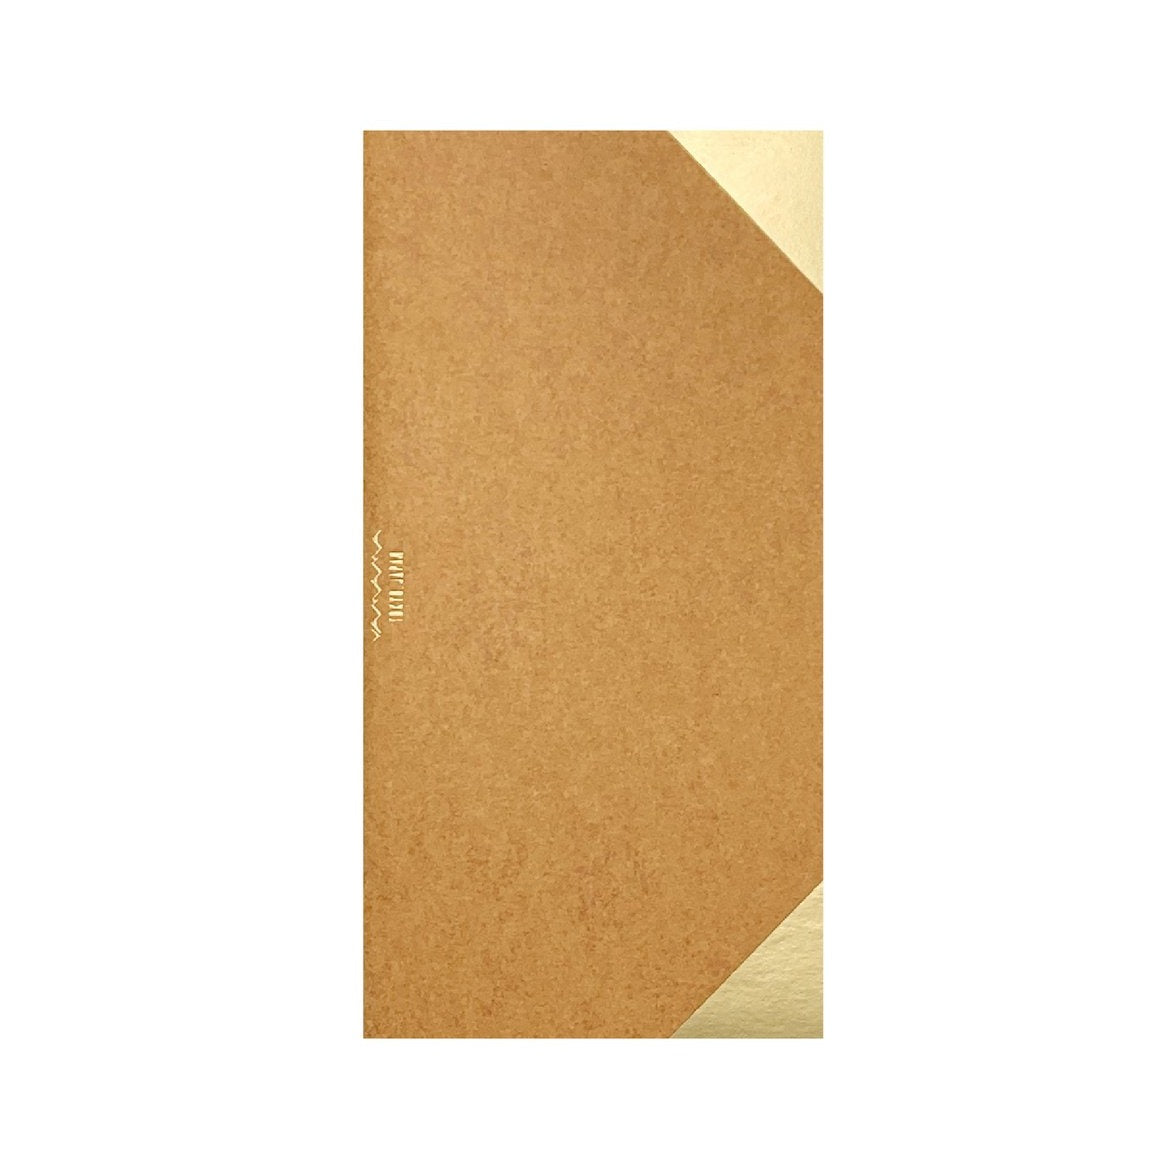 YAMAMA - genähtes Notizbuch im Taschenformat | Braun | Made in Japan 